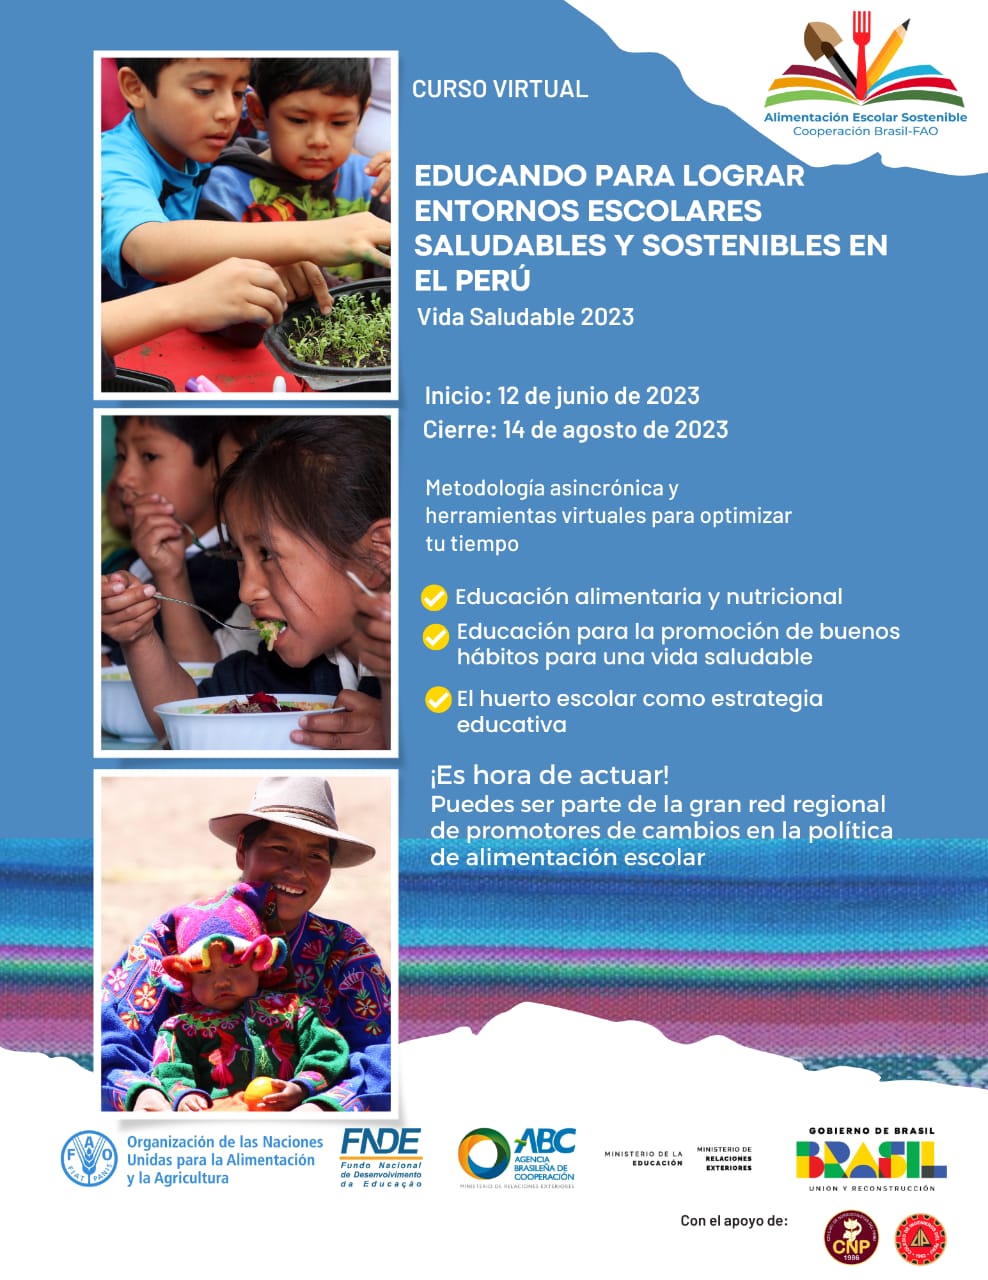 Curso “Educando para Lograr Entornos Escolares Saludables y Sostenibles en el Perú – vida saludable 2023”